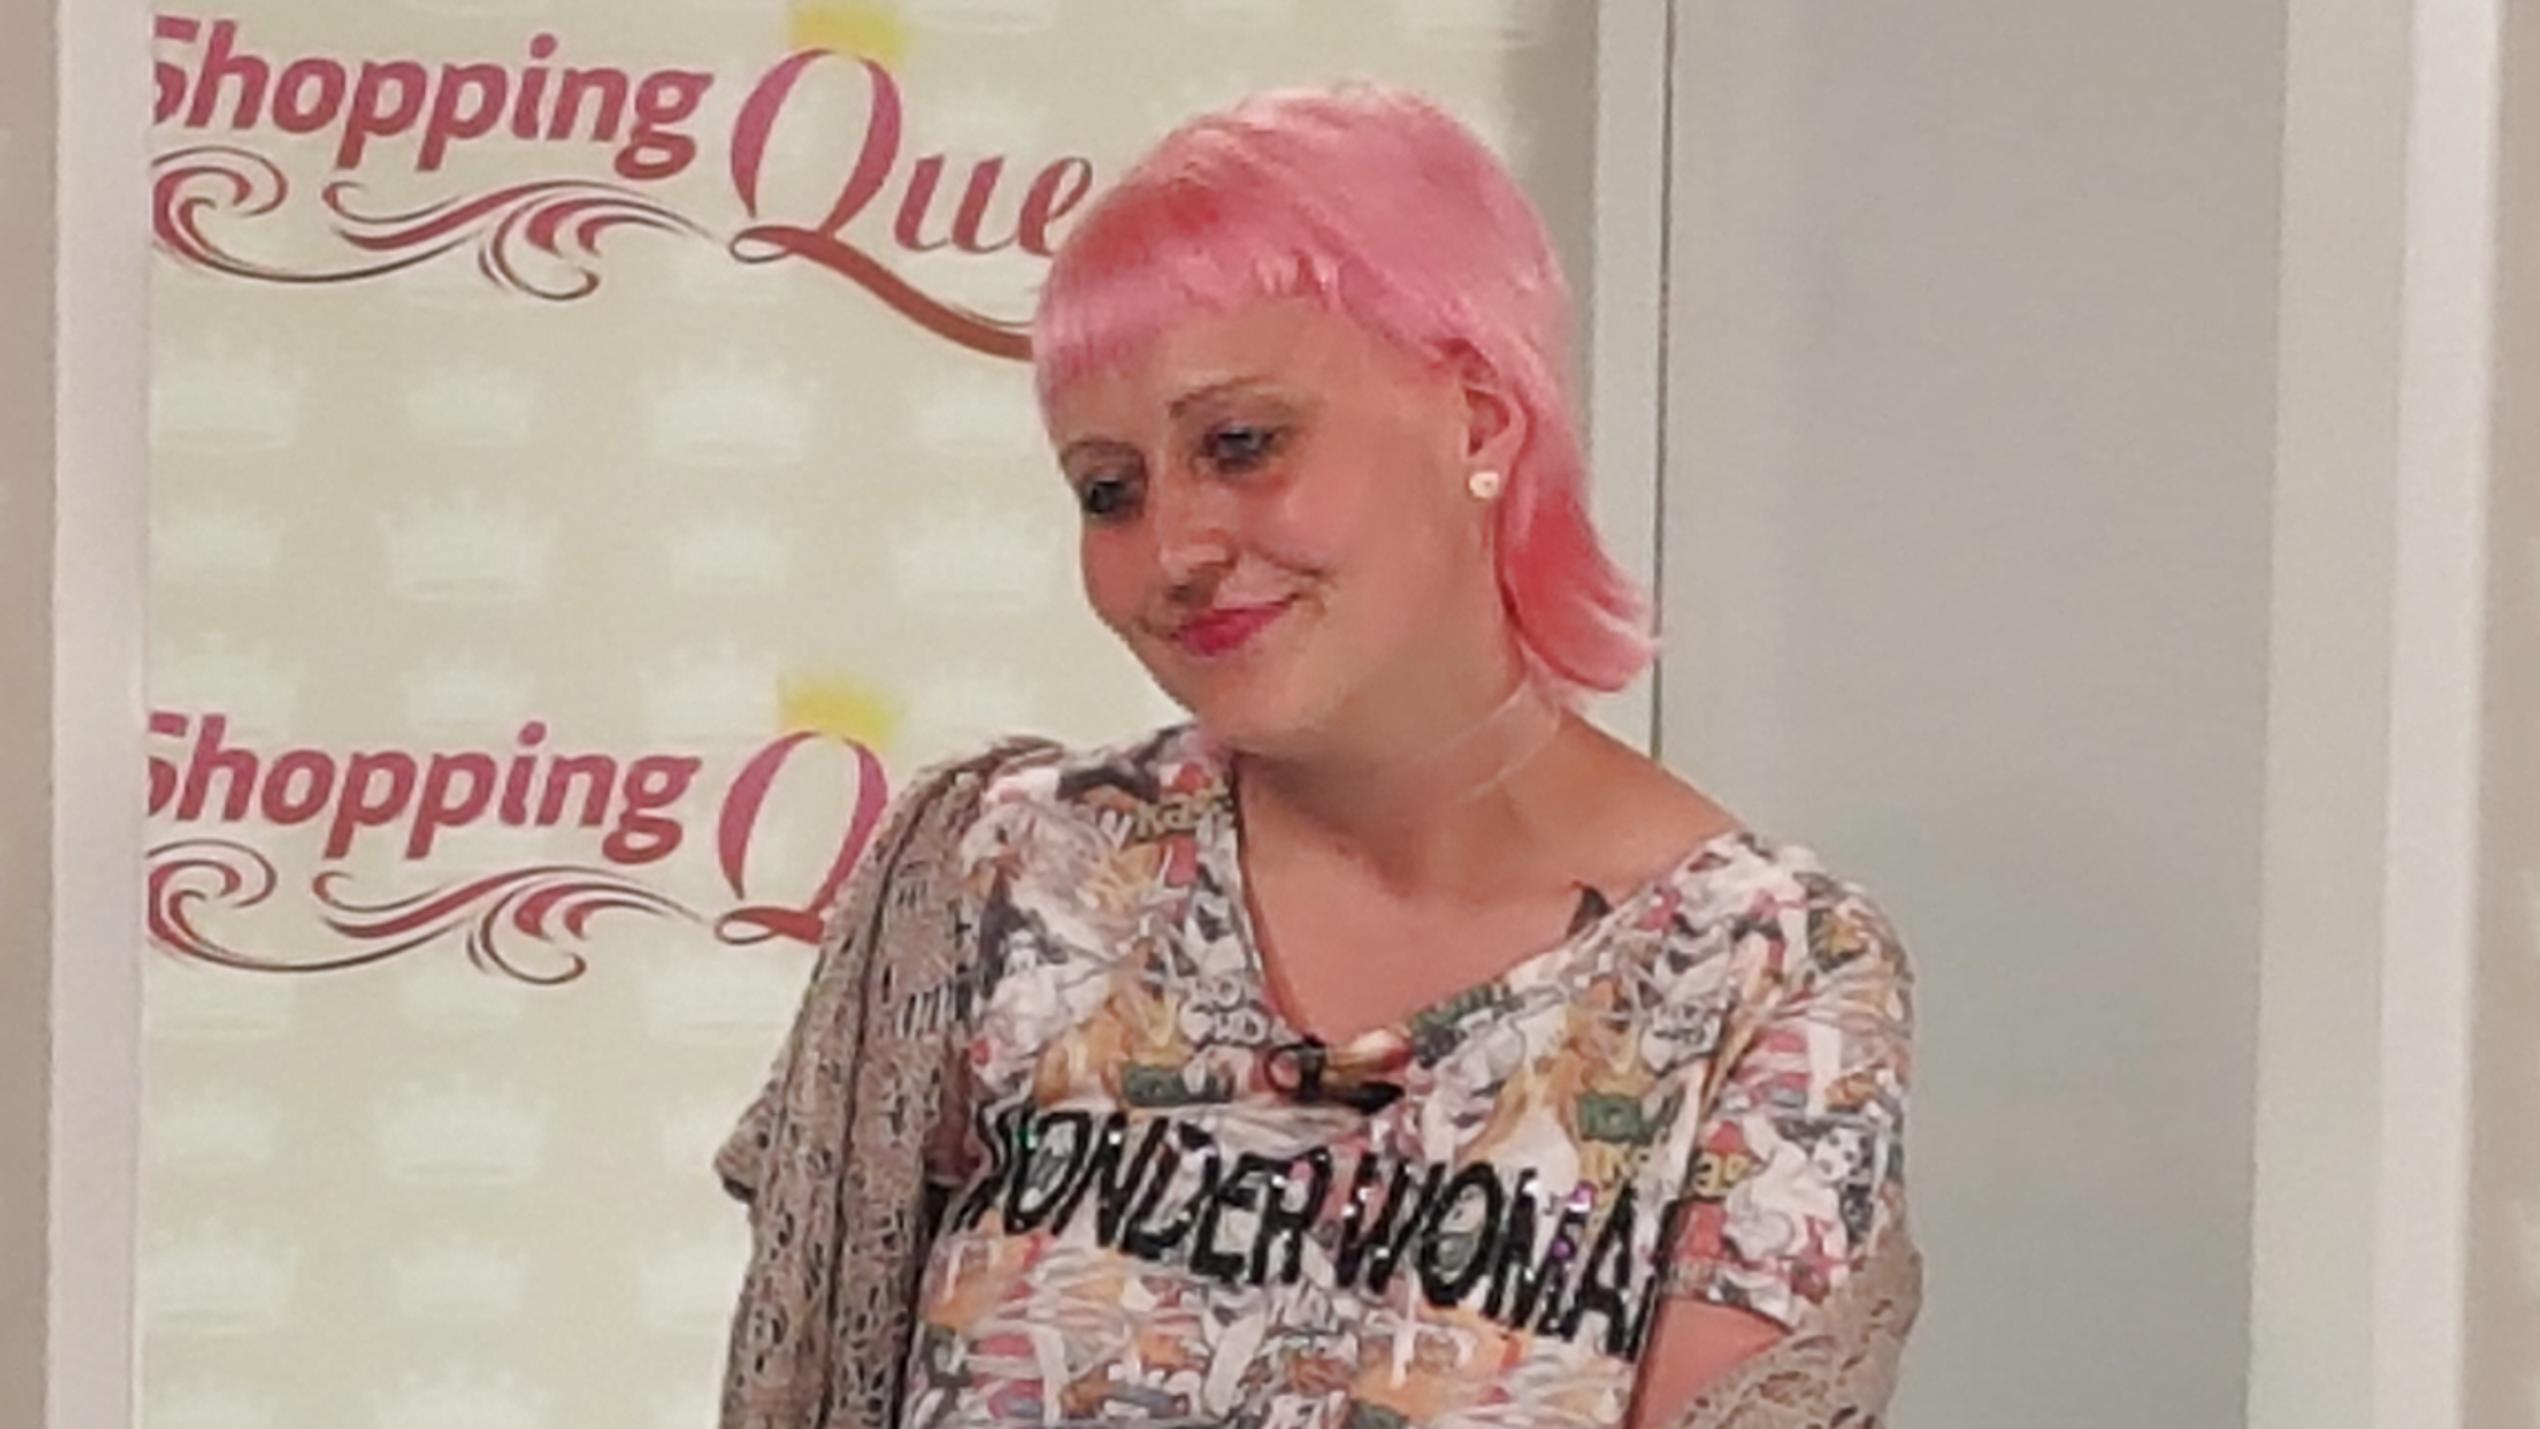 Shopping Queen: Melly hat sich die Haare einfärben lassen